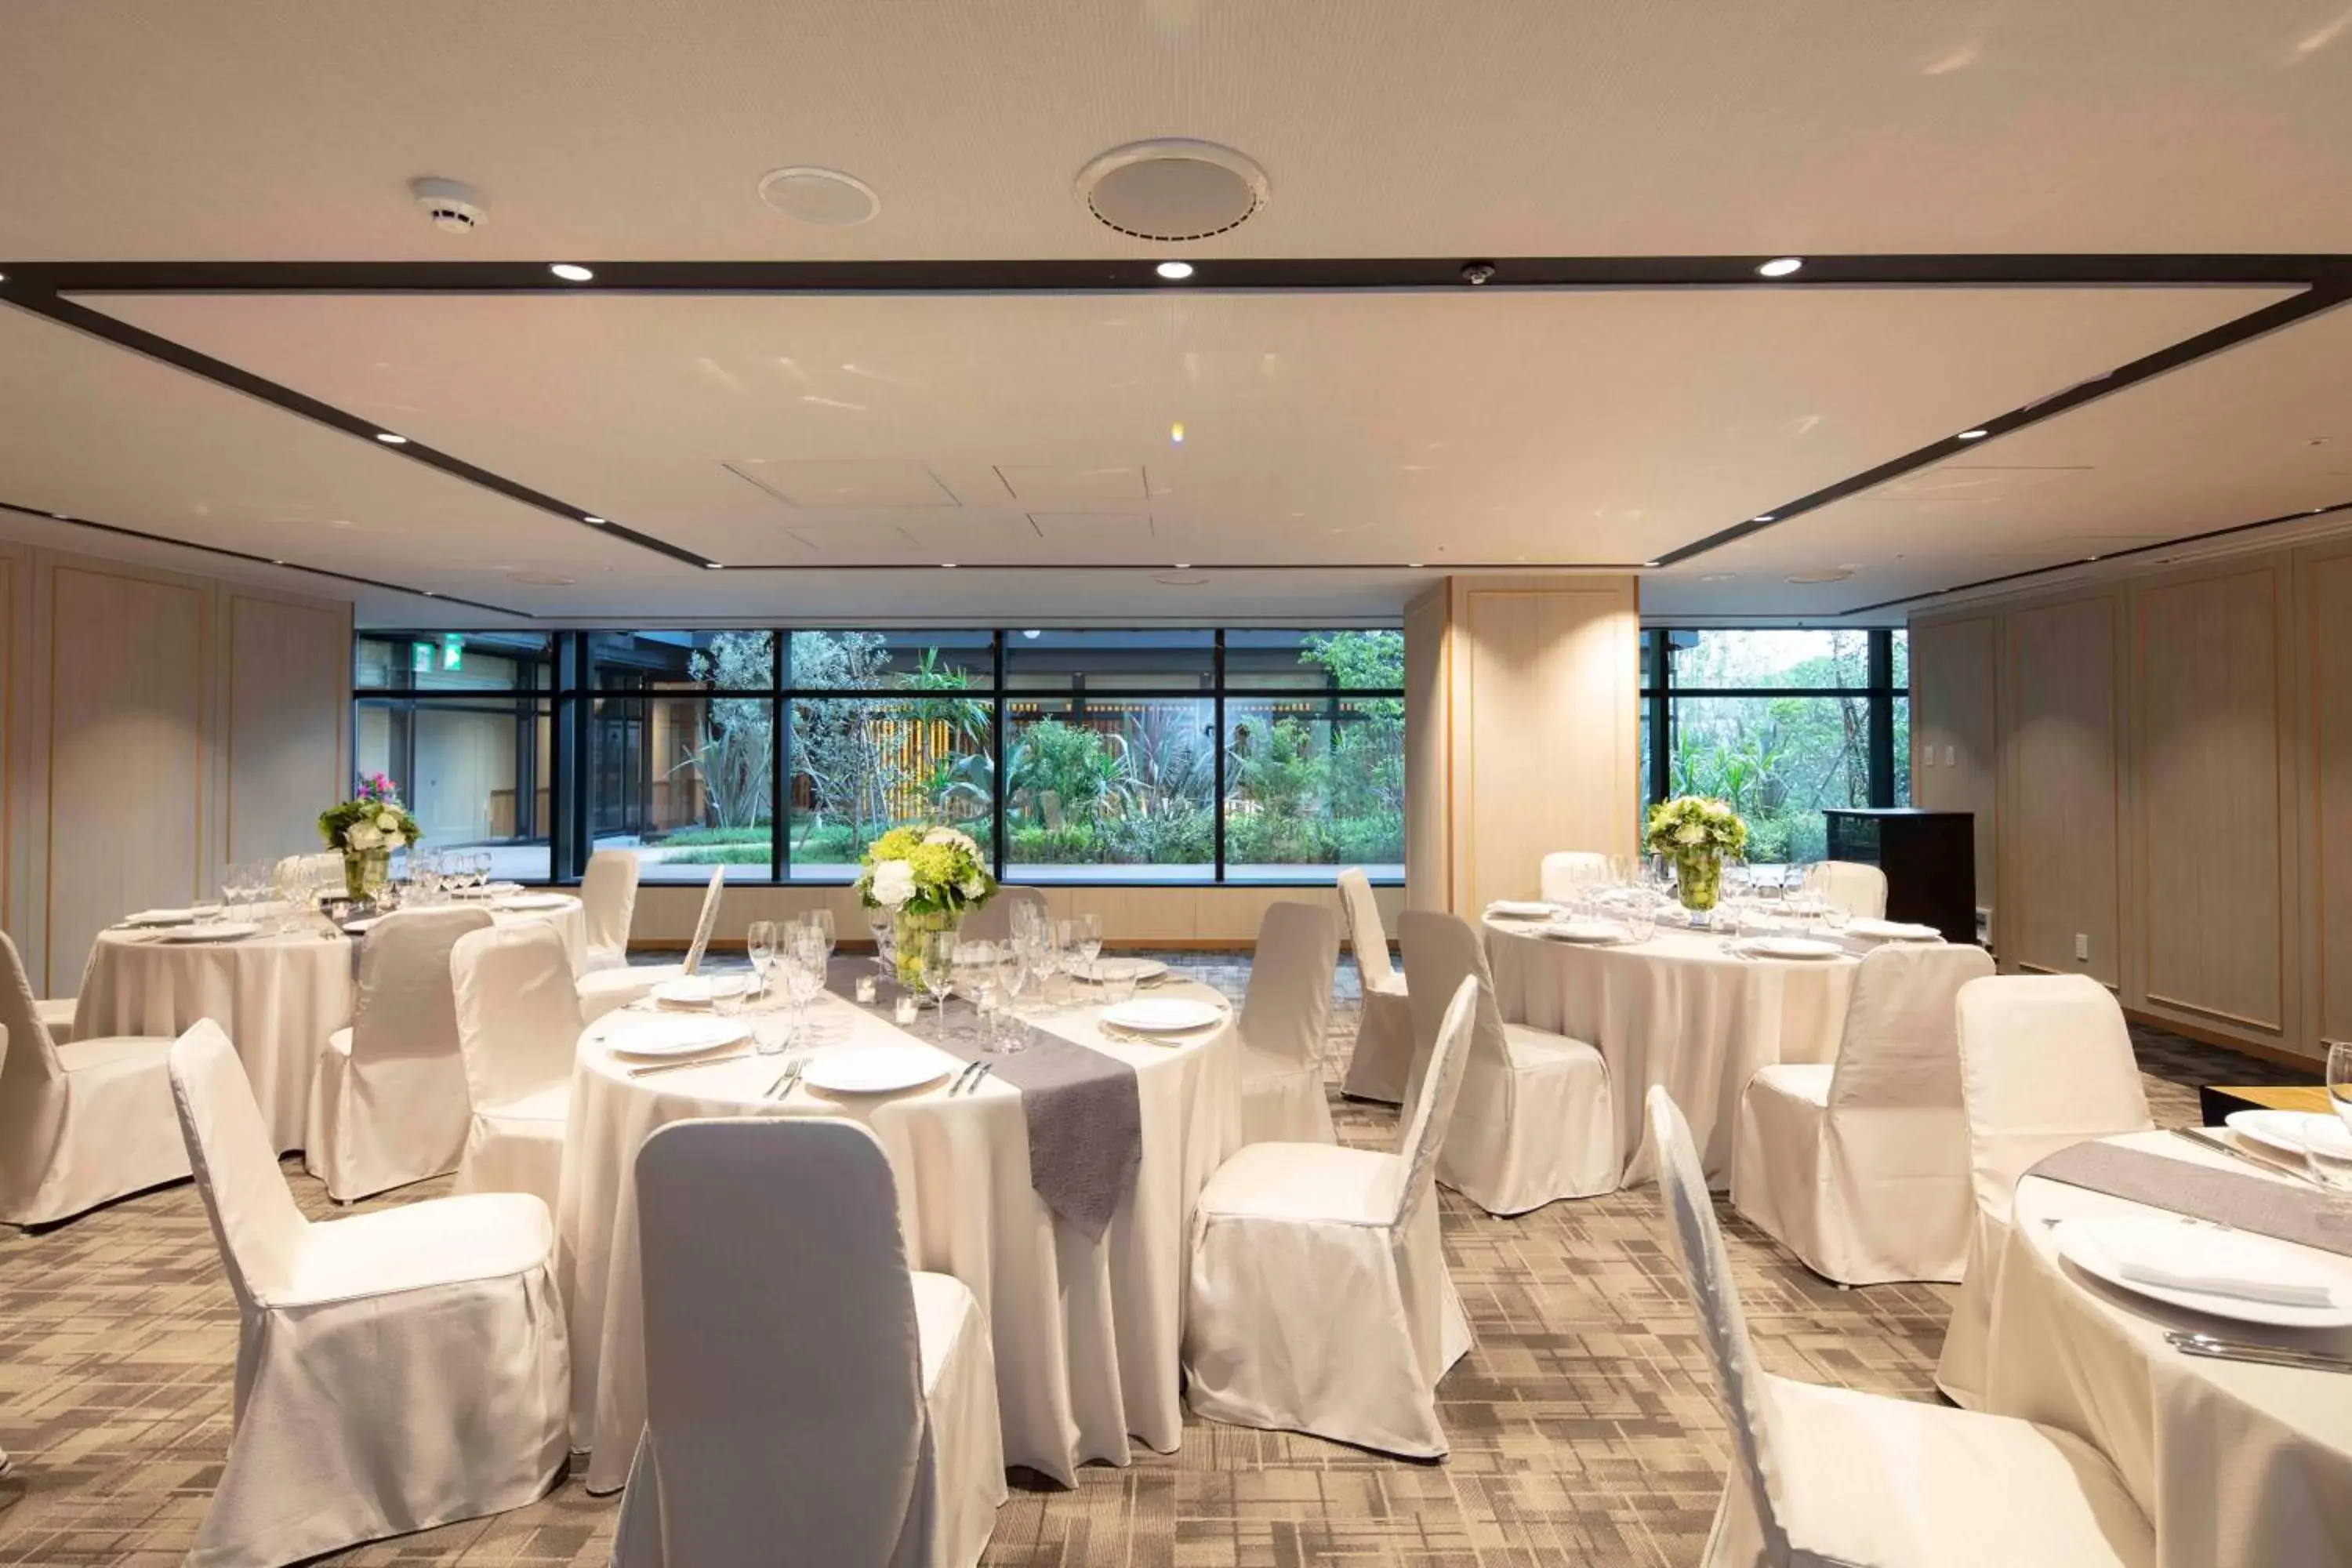 Business facilities, Banquet Facilities in Hyatt Regency Tokyo Bay